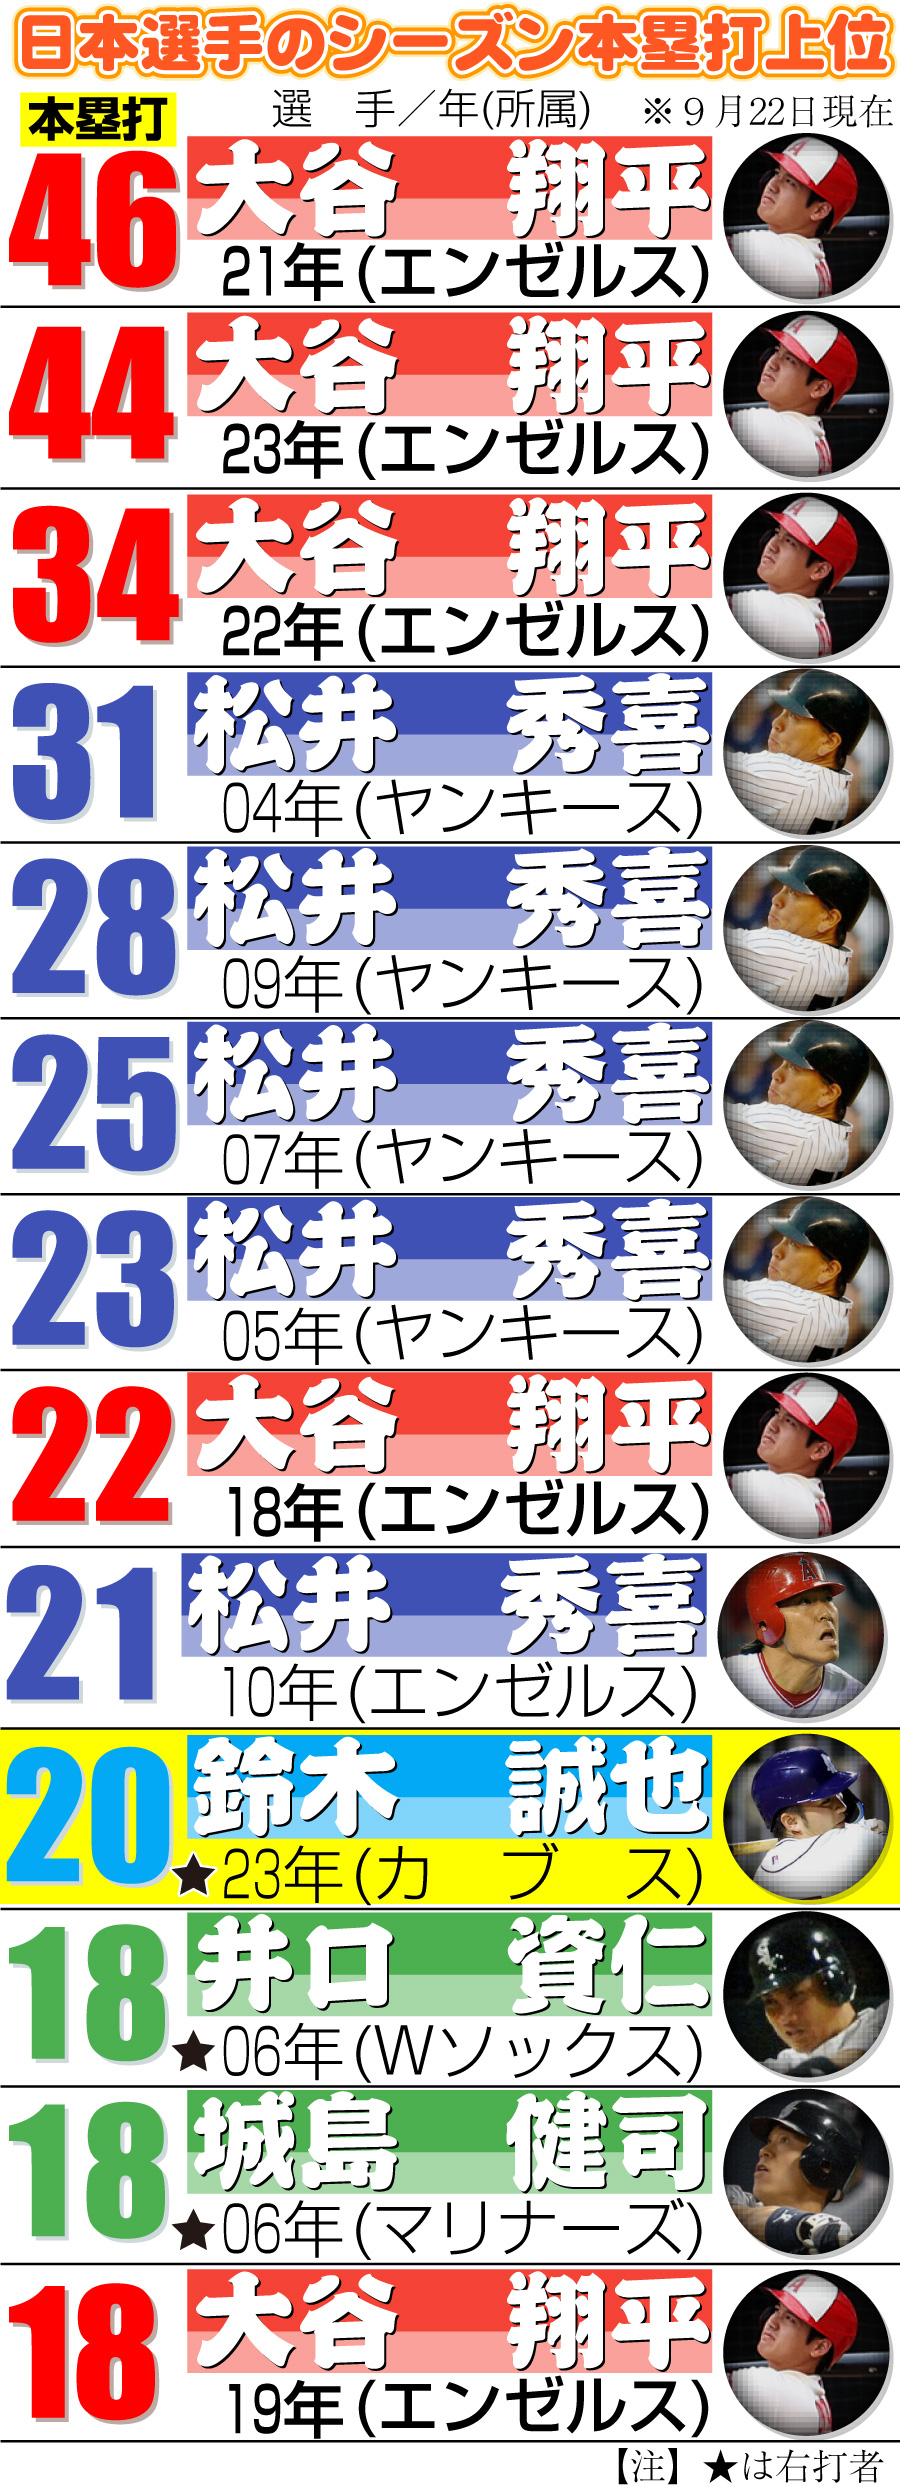 【イラスト】日本選手のシーズン本塁打上位